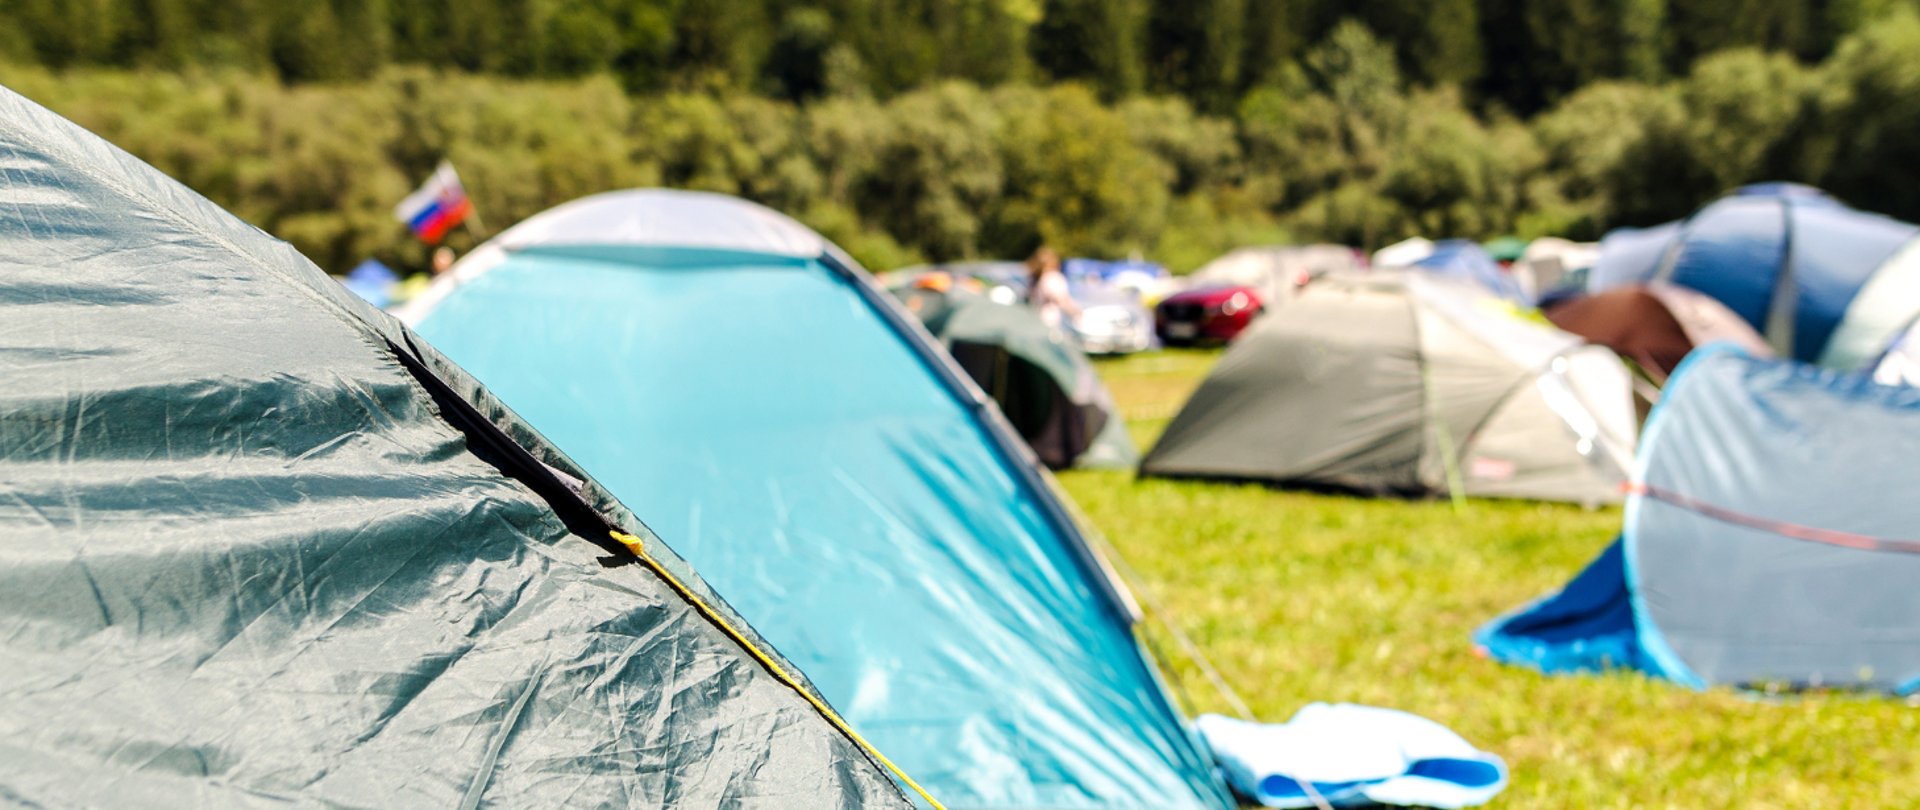 Na zdjęciu znajduje się pole namiotowe na którym rozstawione są różnokolorowe namioty. Na pierwszym planie z lewej strony znajduje się namiot w kolorze ciemnej zieleni.